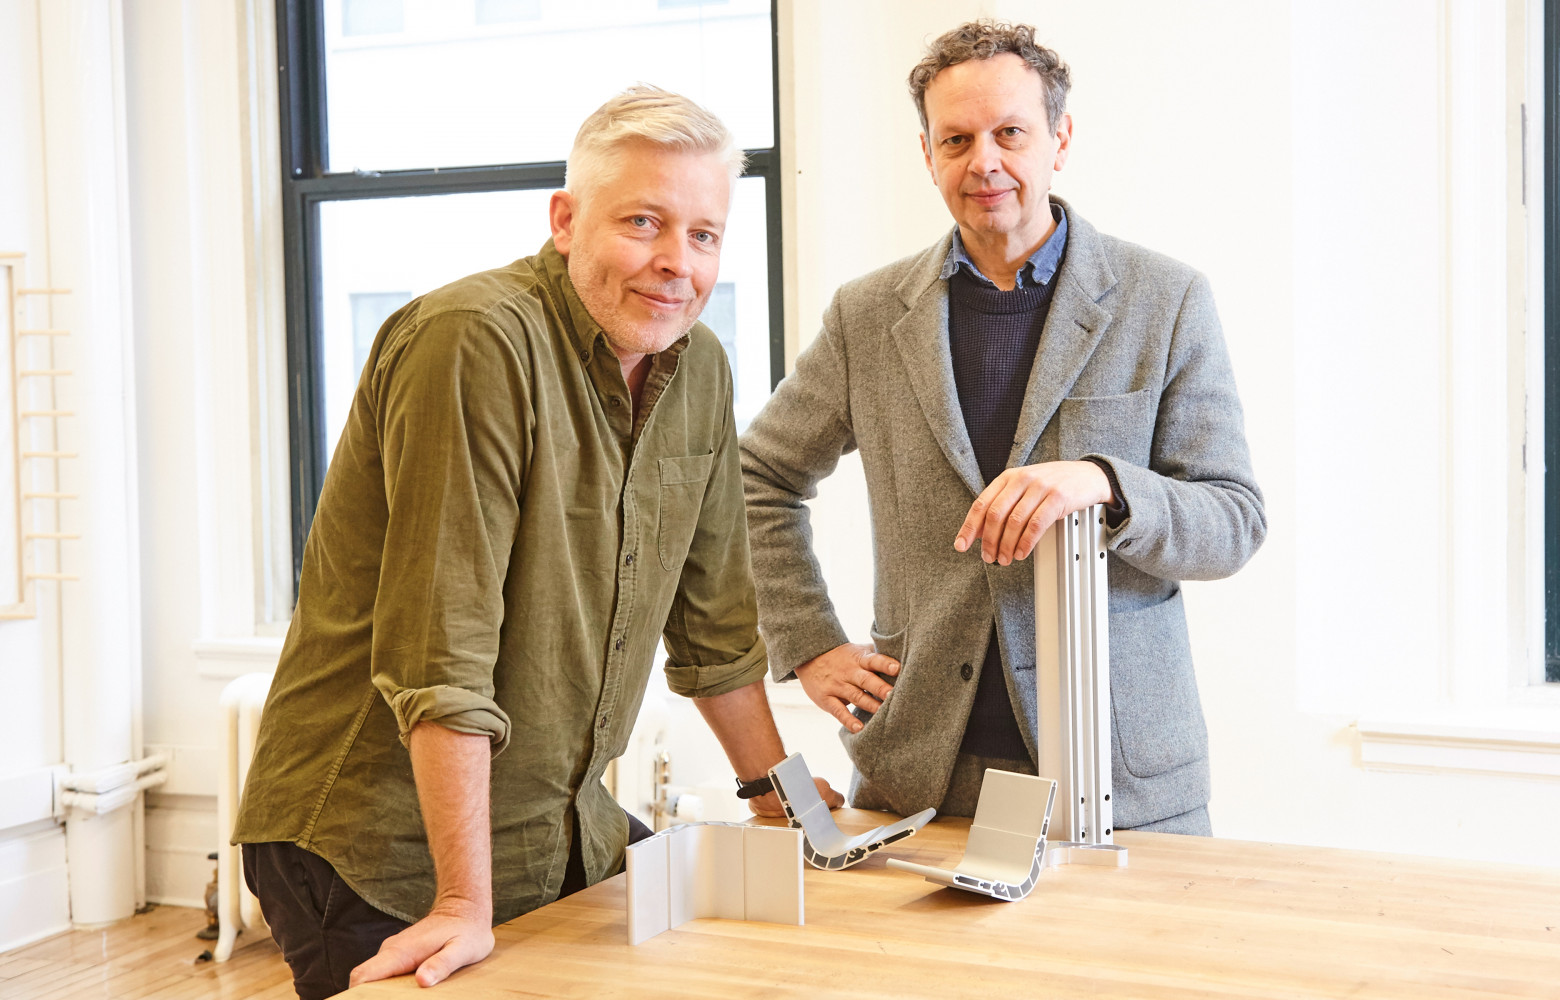 Marcus Engman, le responsable du design chez IKEA, a accompagné Tom Dixon dans sa démarche originale.